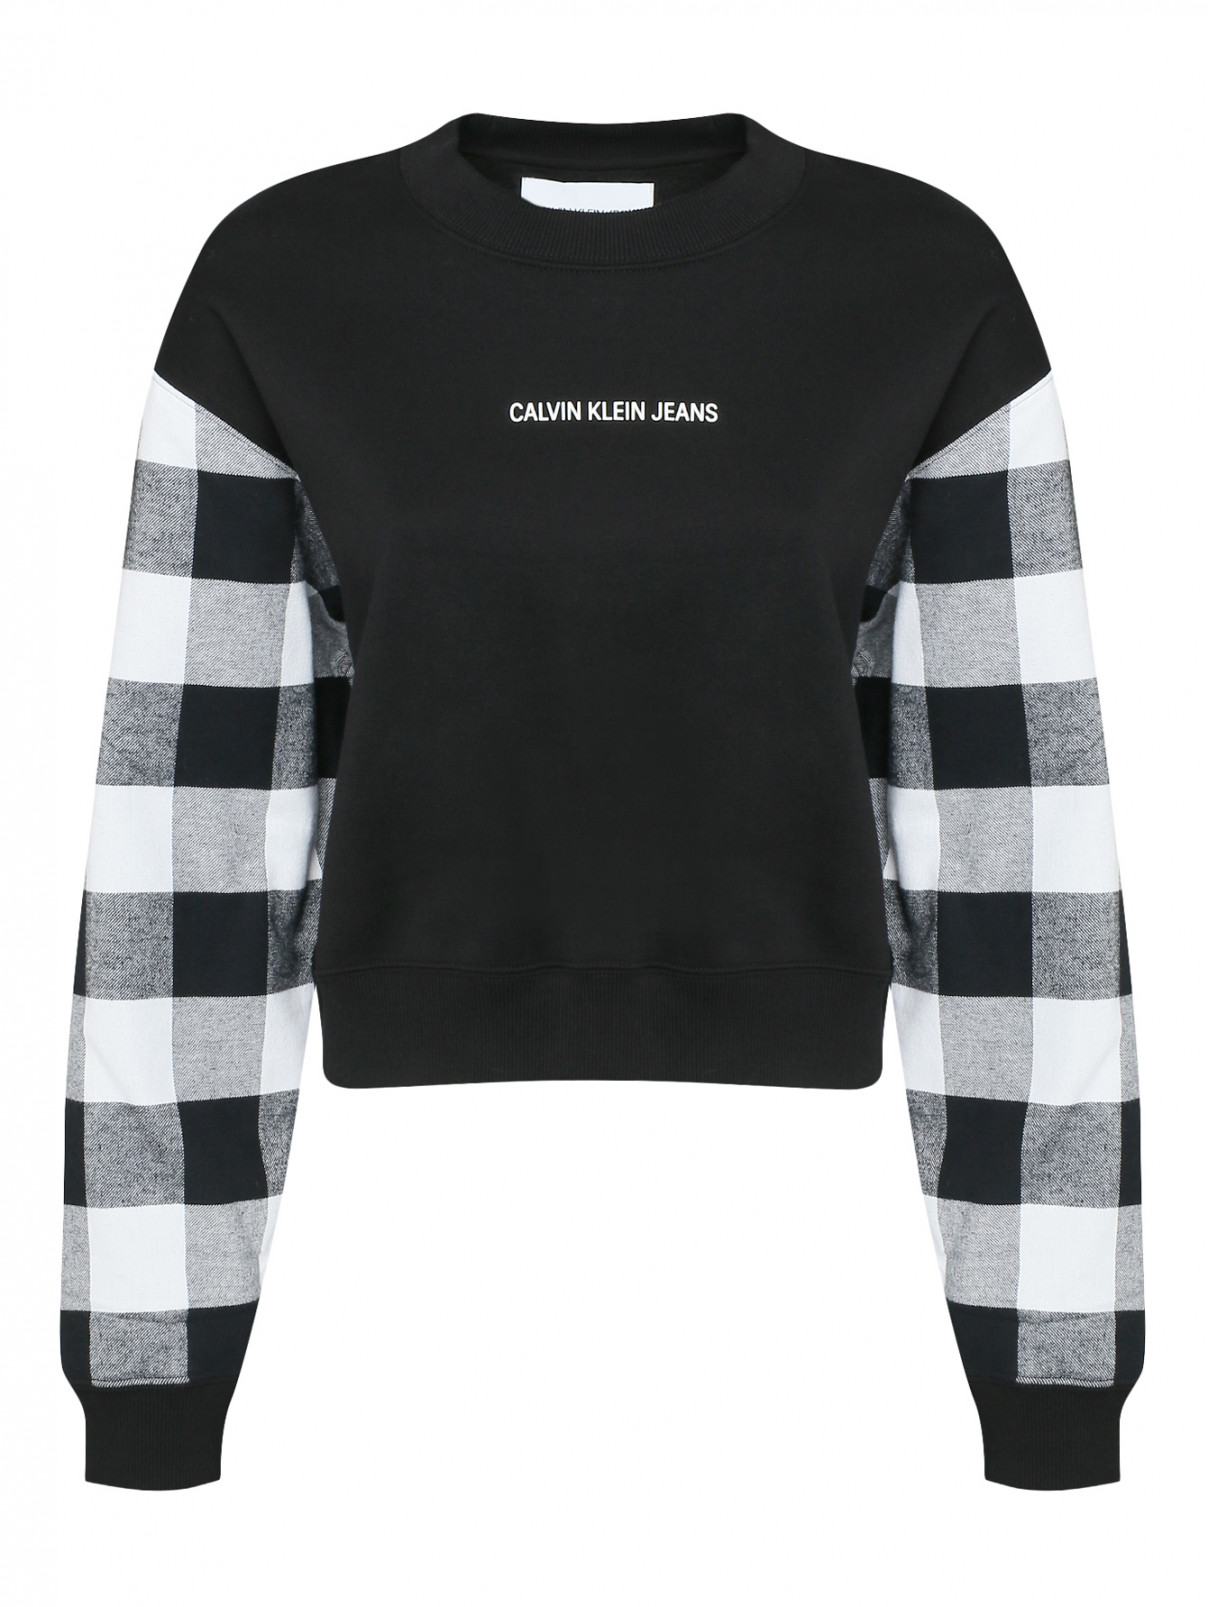 Свитшот с принтом и узором Calvin Klein  –  Общий вид  – Цвет:  Черный